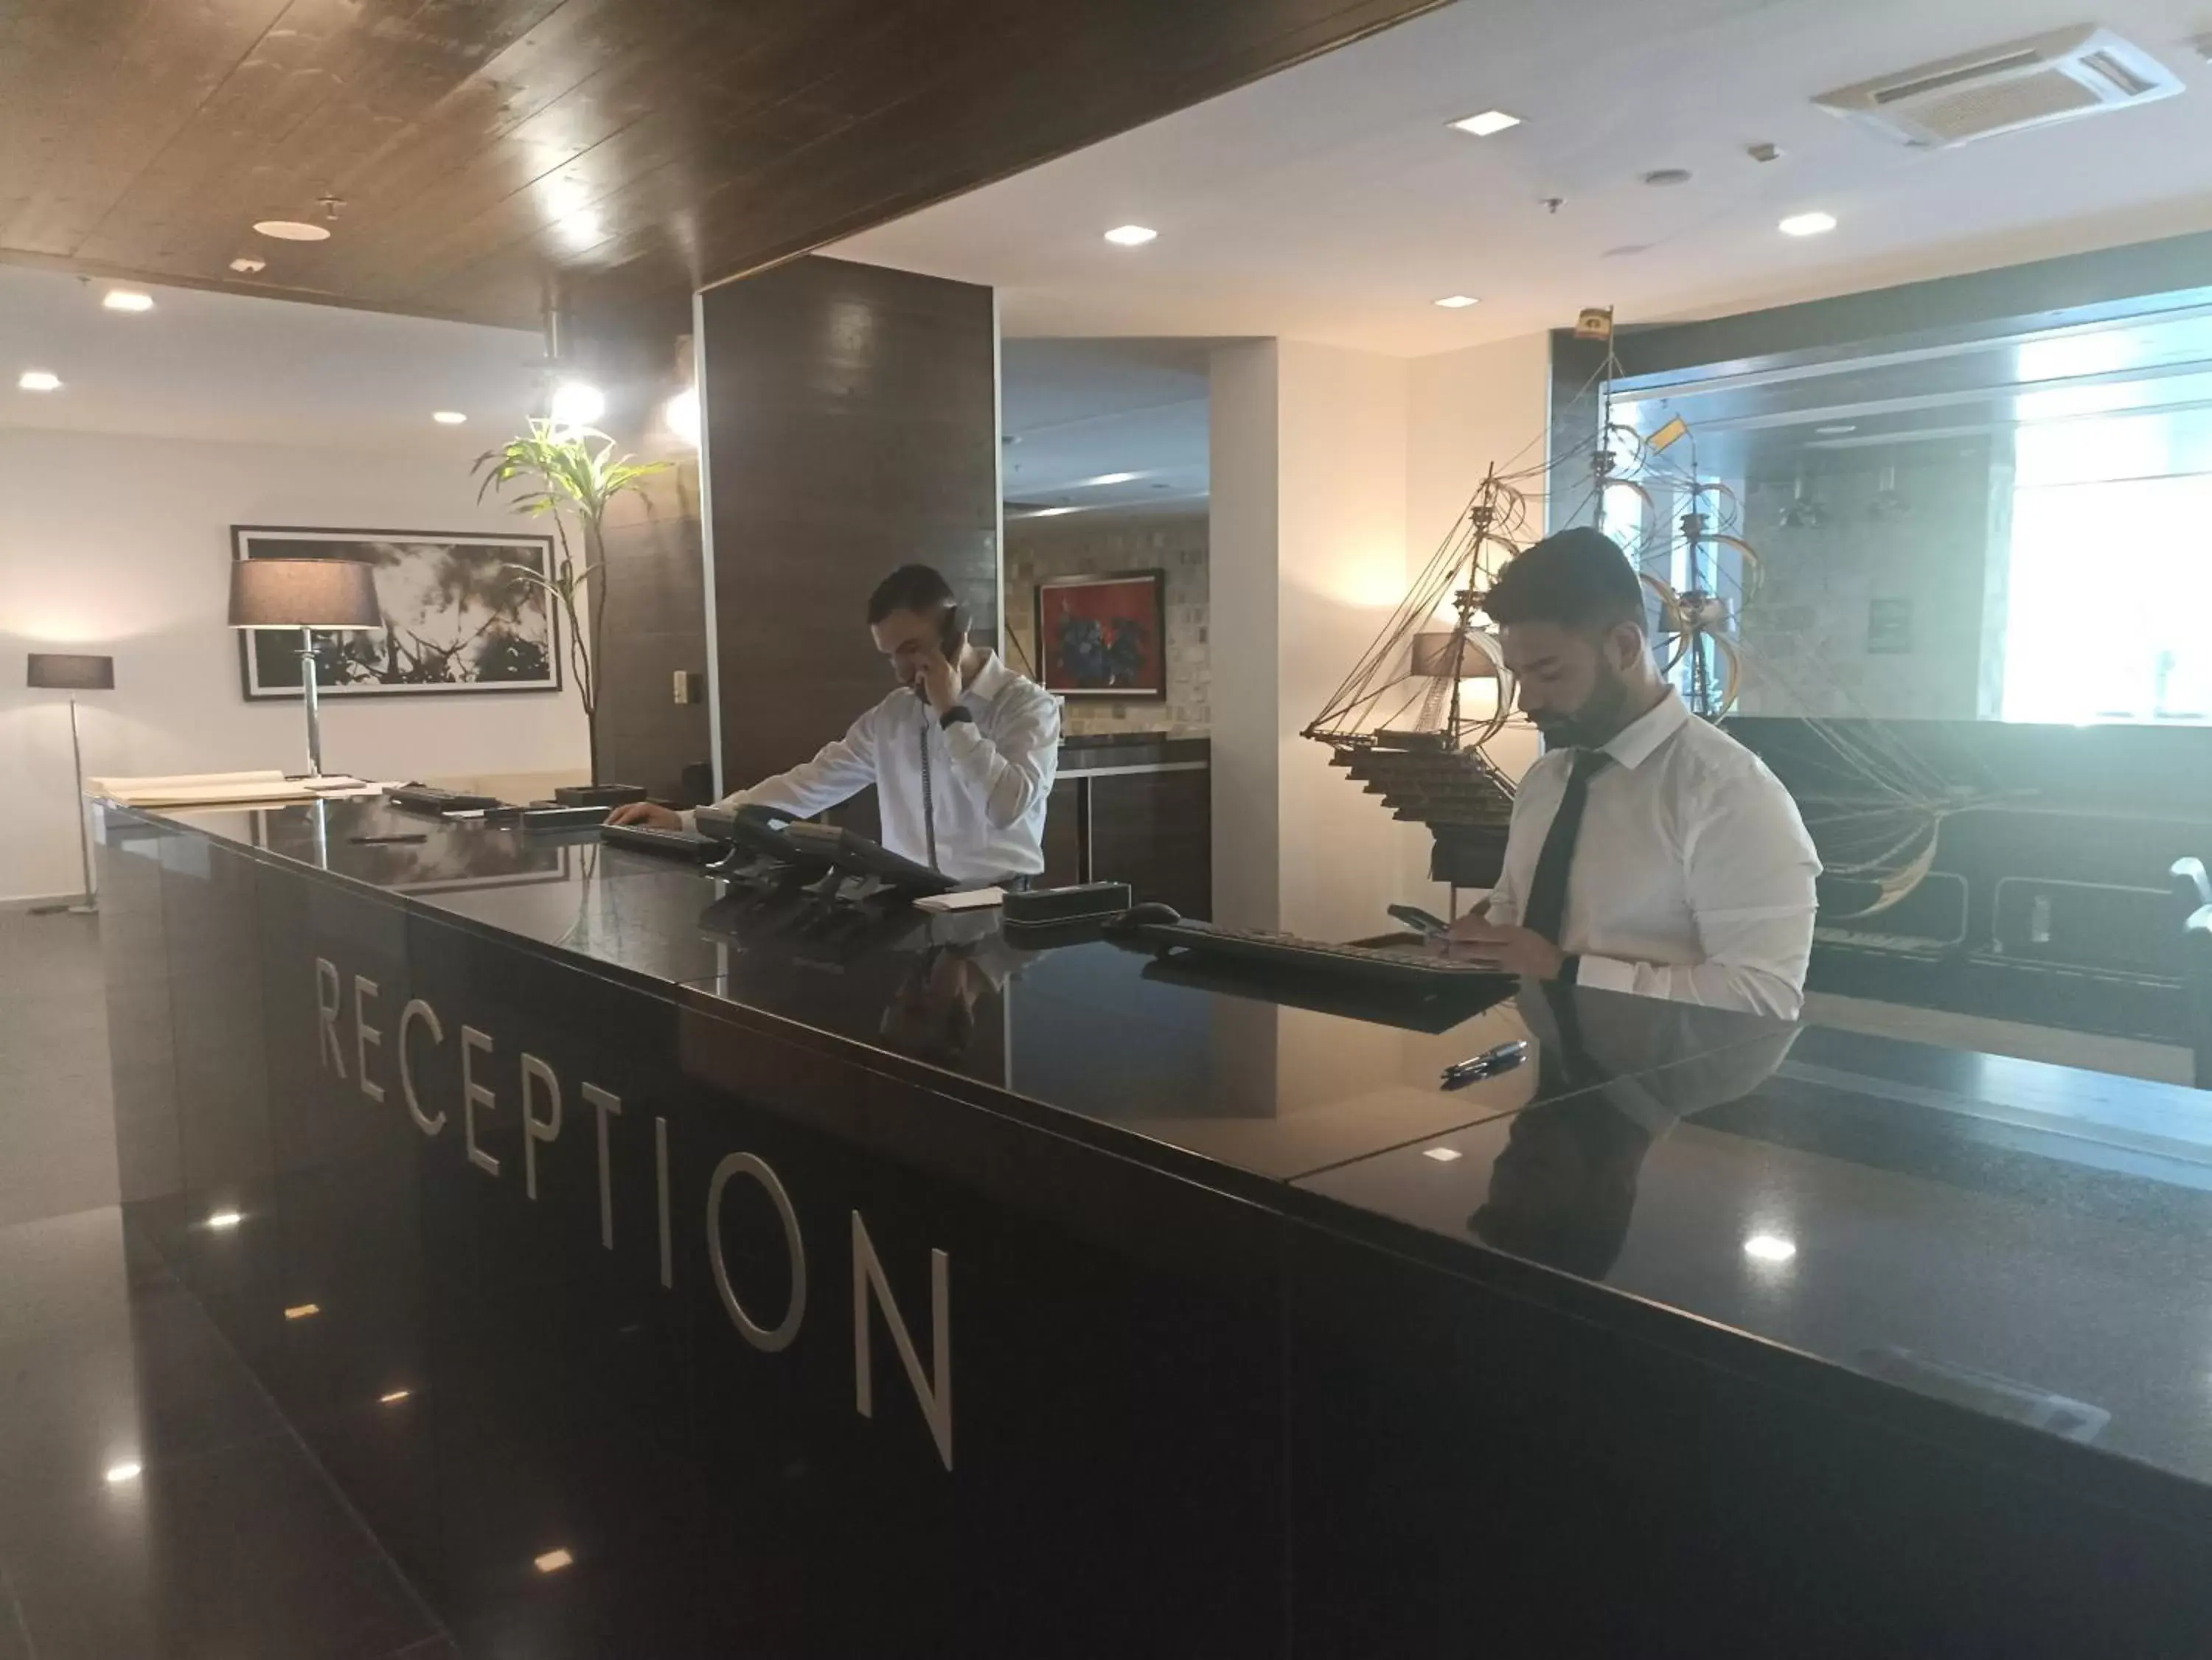 Lobby or reception in Avala Resort & Villas